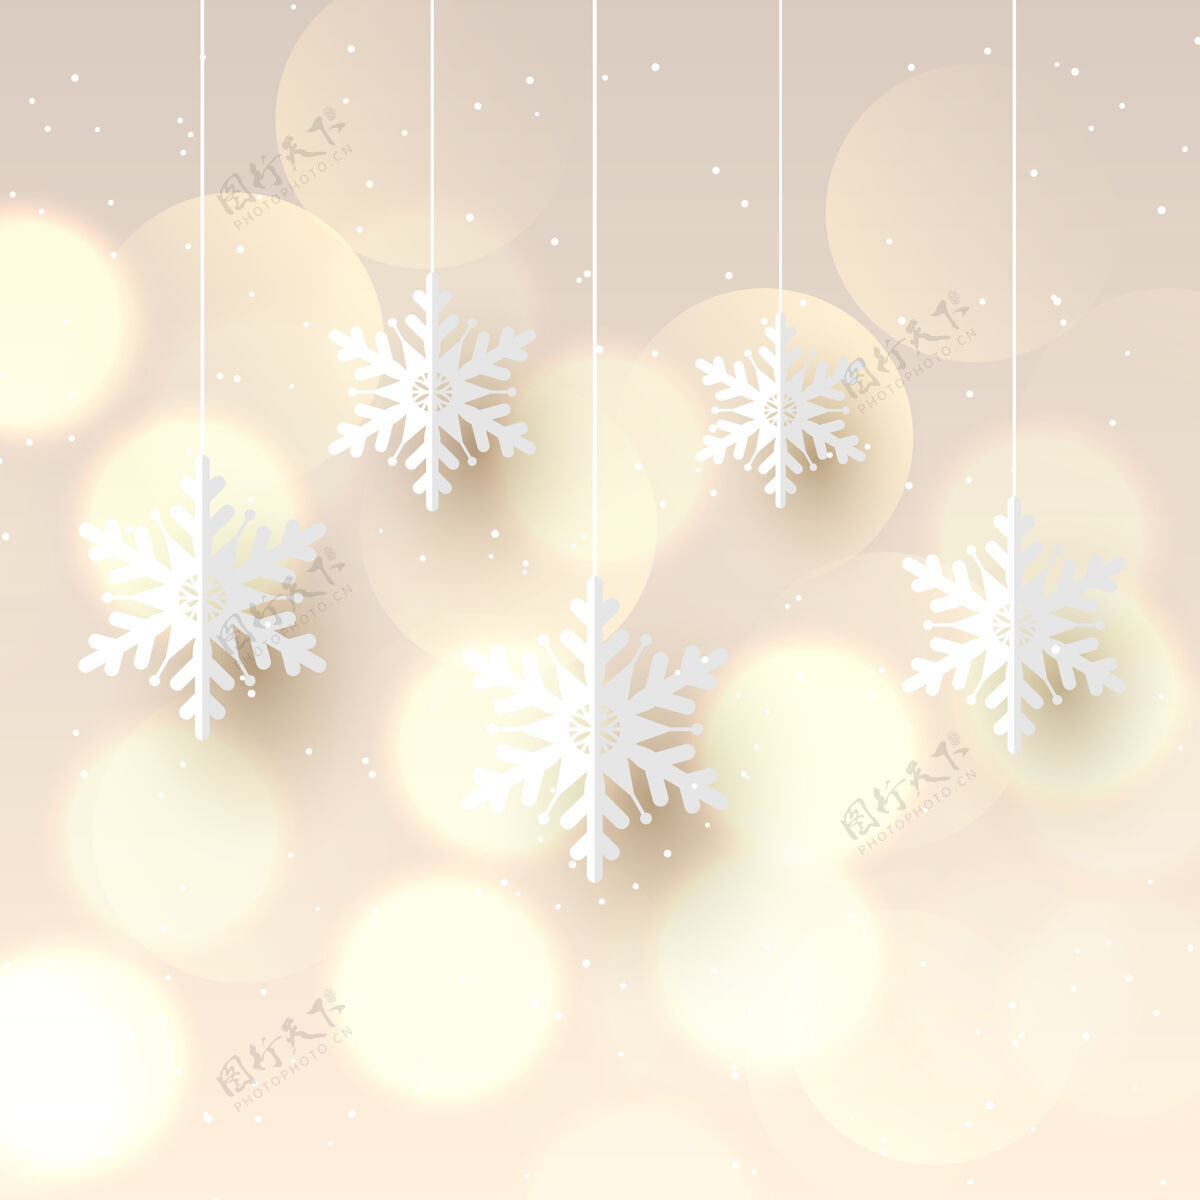 灯圣诞背景与悬挂雪花和波基灯设计剪纸雪花圣诞节